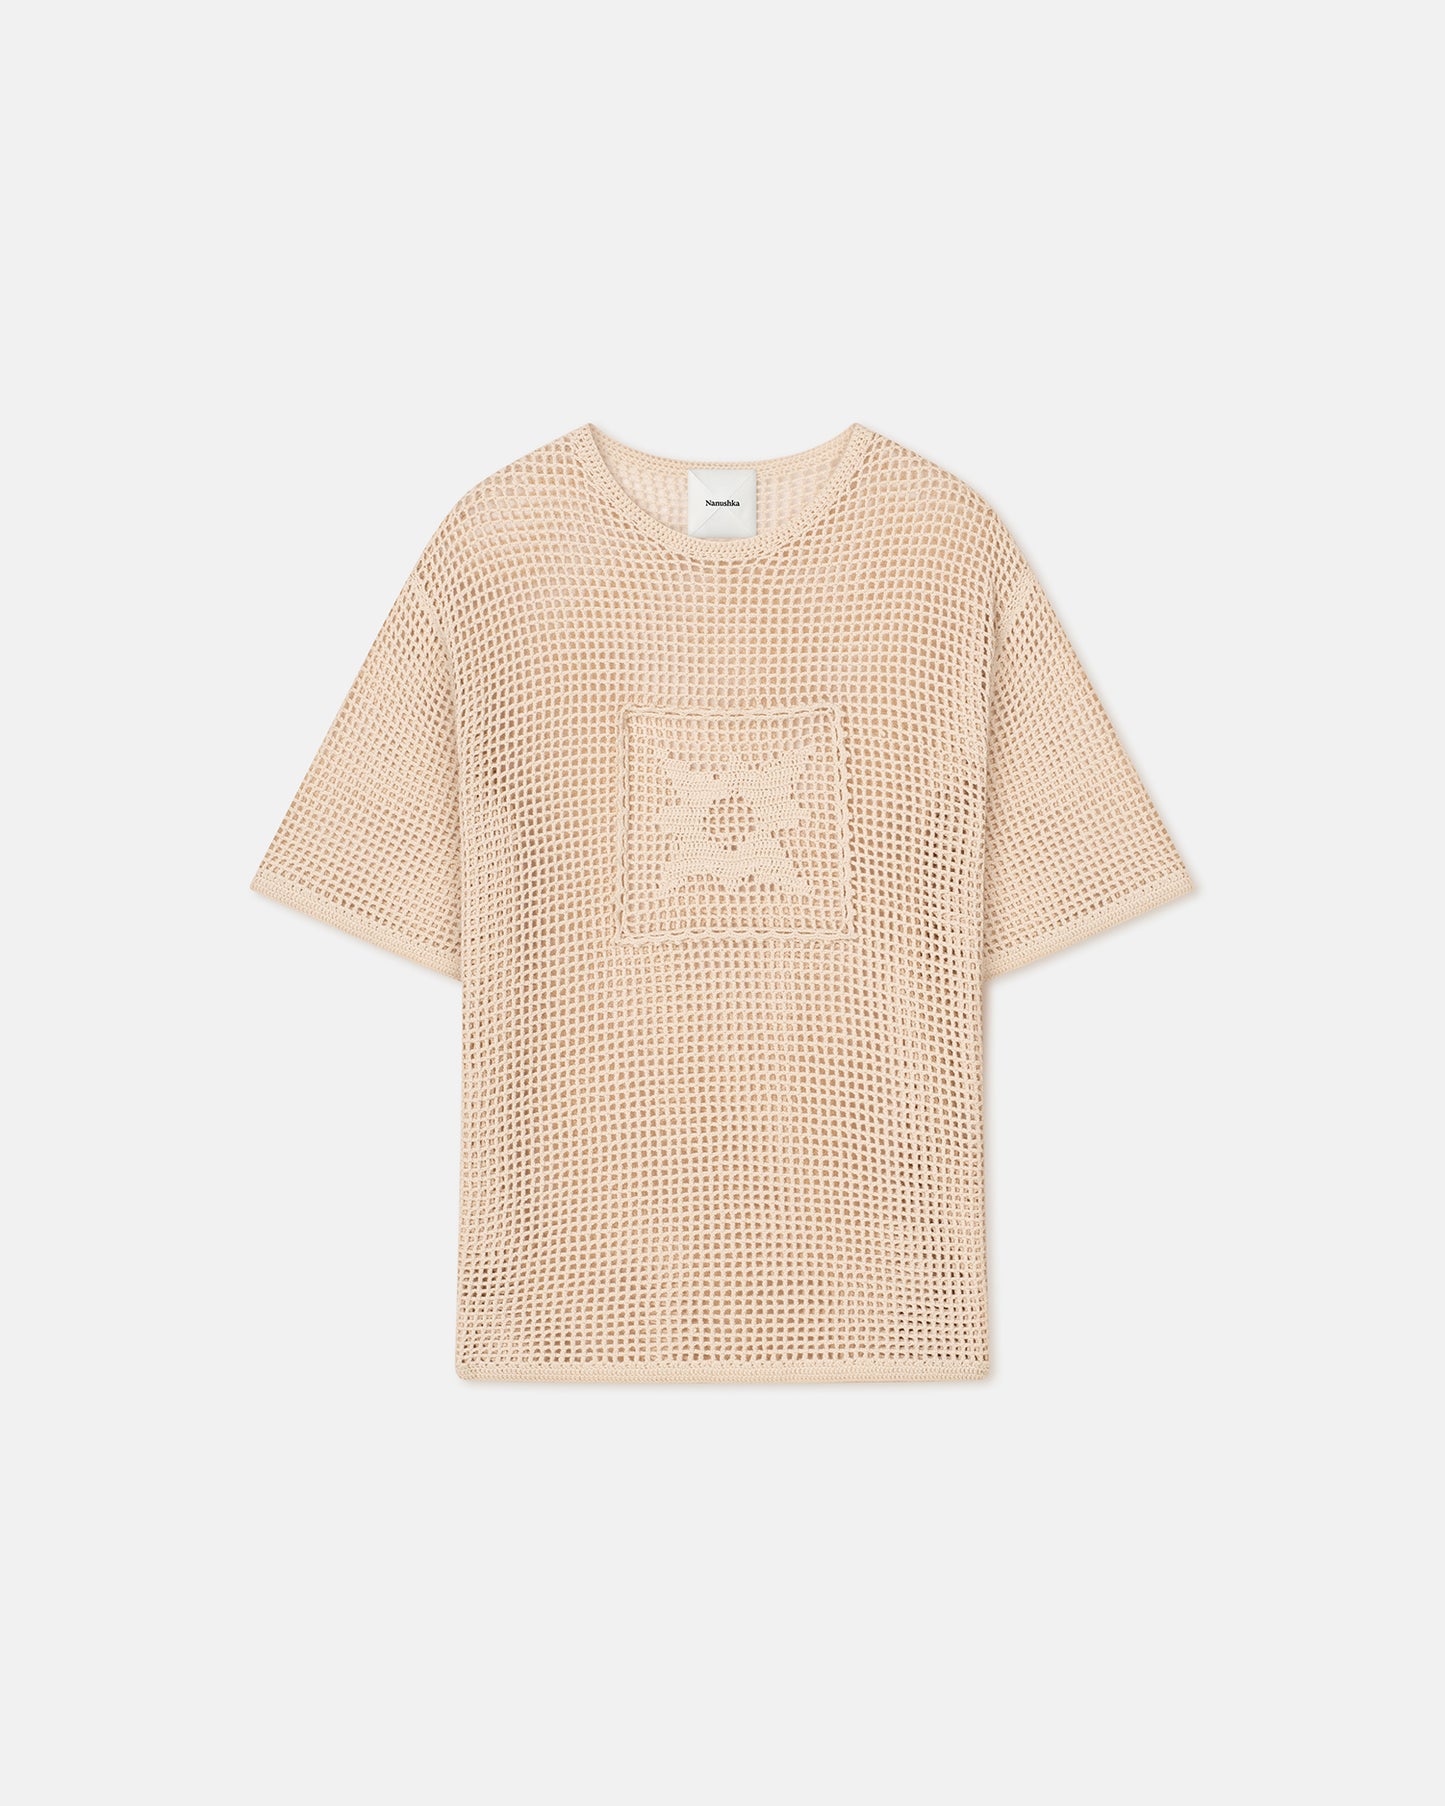 Estienne - Crochet Lace T-Shirt - Creme